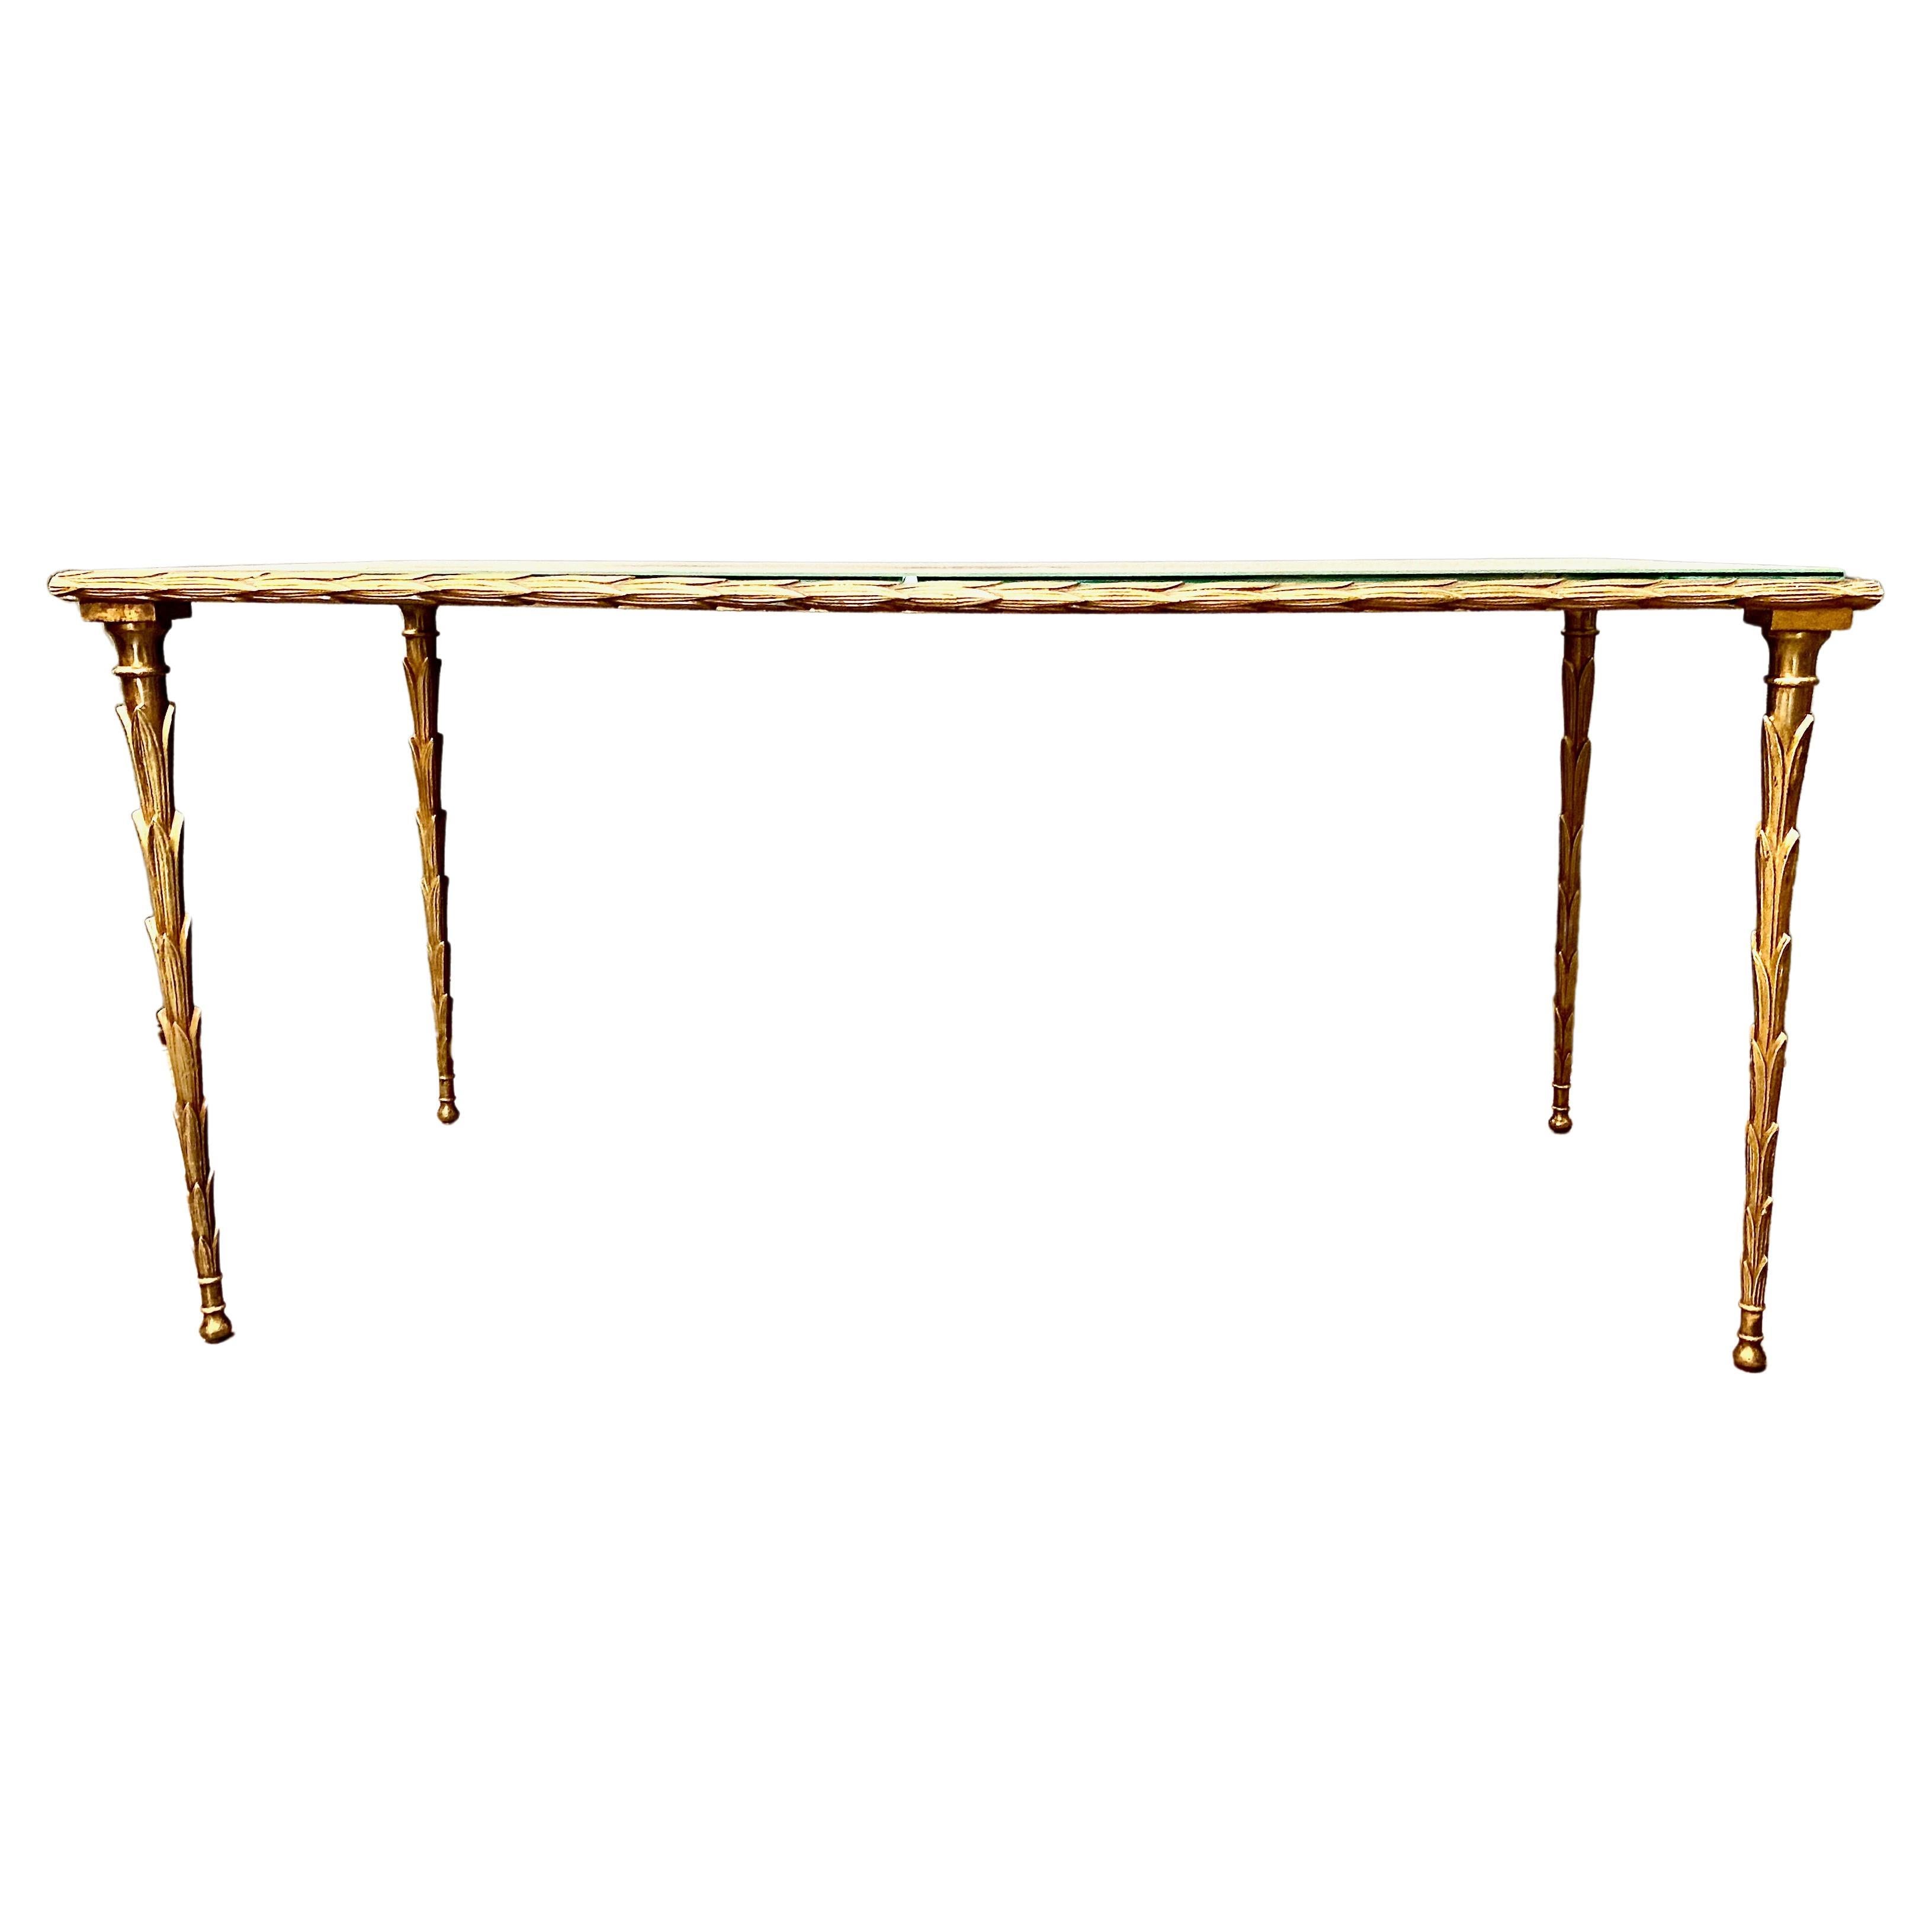 Voici un superbe exemple de table basse ou de table de cocktail de la Maison Bagues datant de C.I.C. 1960-1969. Le cadre en bronze doré est moulé en forme de palmier. Le fait que l'élément palmier s'étende jusqu'à l'entourage supérieur est un signe